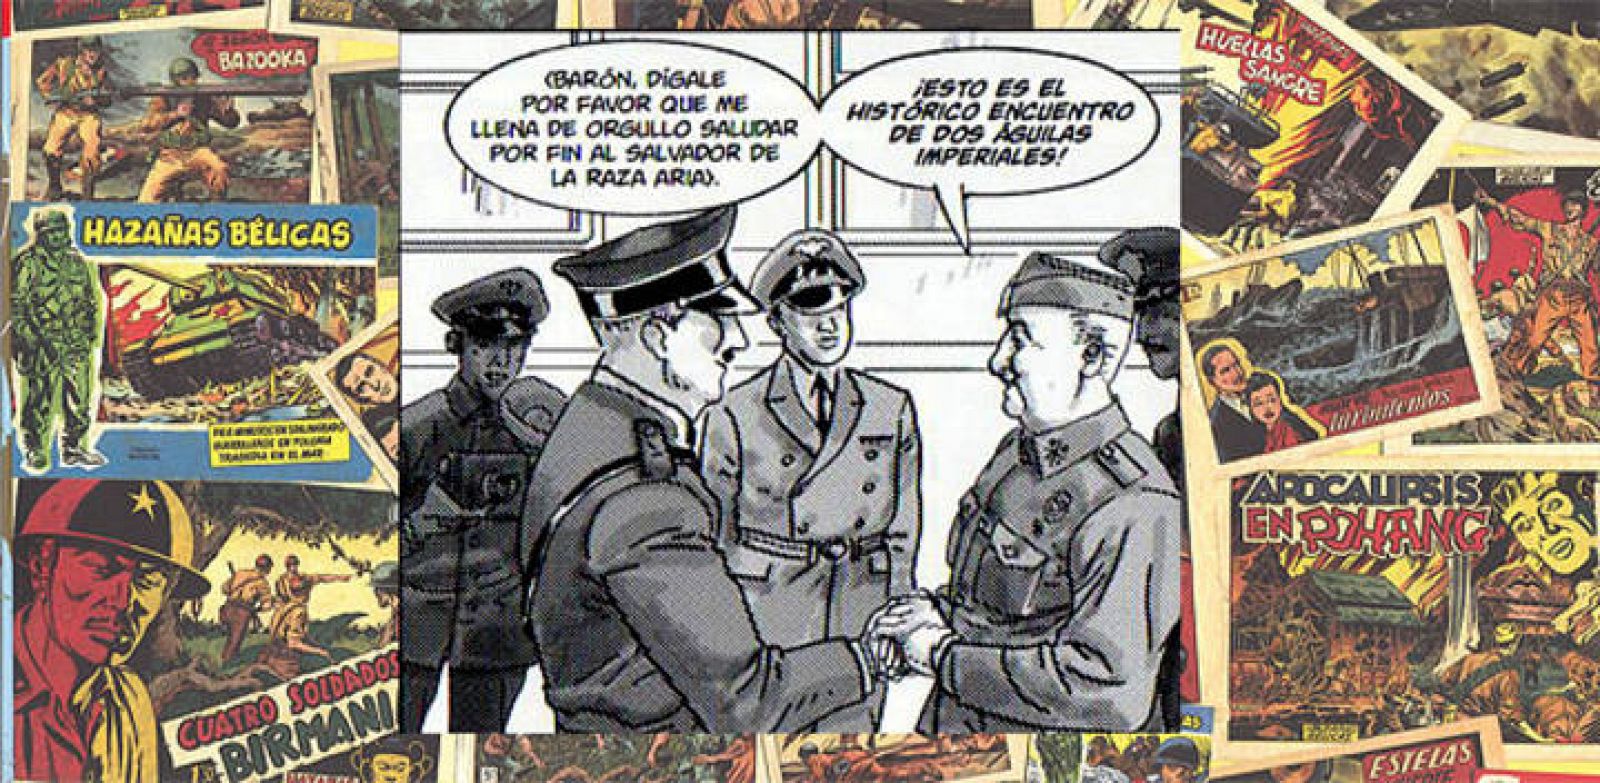  El encuentro entre Hitler y Franco recreado en 'Dos Águilas de un tiro' de Hernán Migoya, Joan Fuster y Carlos García (Perro)